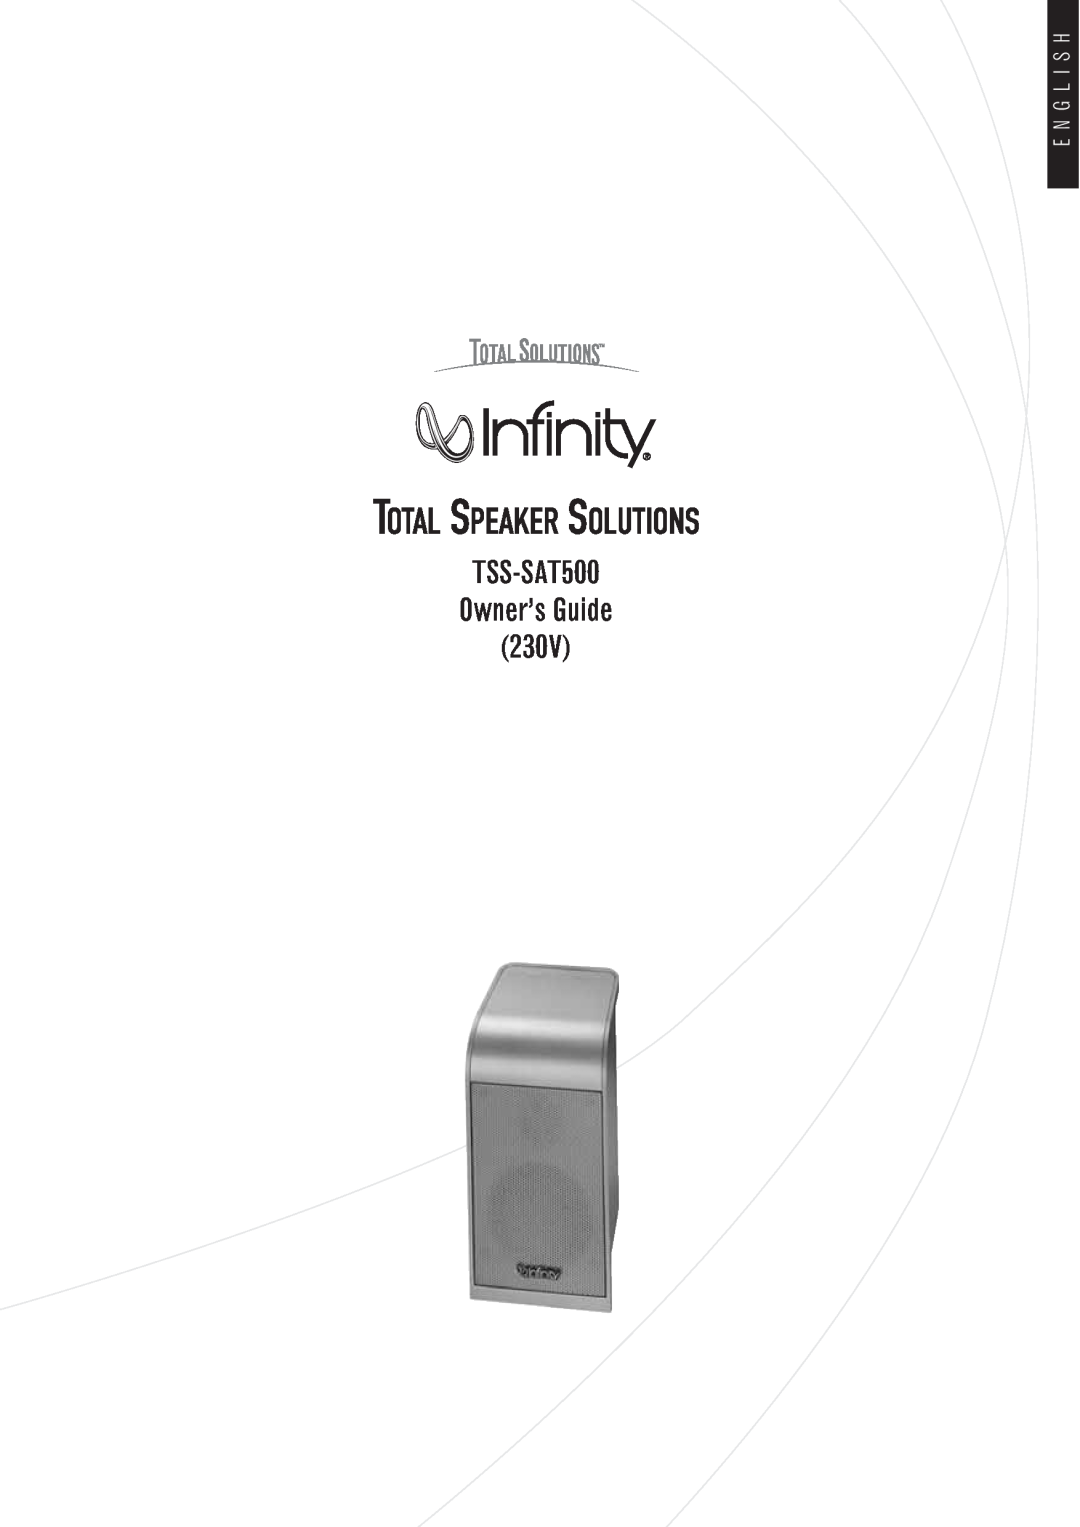 Infinity manual E N G L I S H, Total Speaker Solutions, TSS-SAT500 Owner’s Guide 